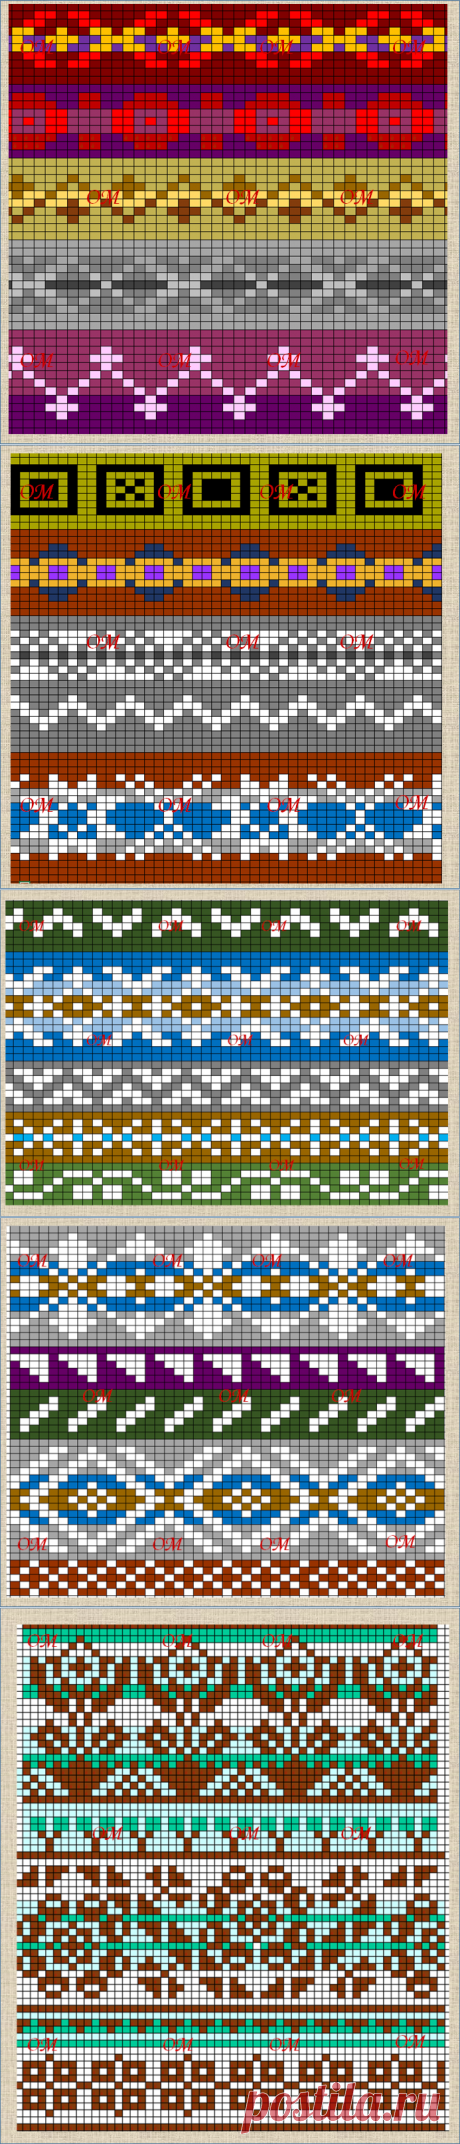 30 двухцветных полосок жаккардового узора для вязания спицами - схемы для свободного доступа | Про мои рукоделочки и вкусняшки | Яндекс Дзен